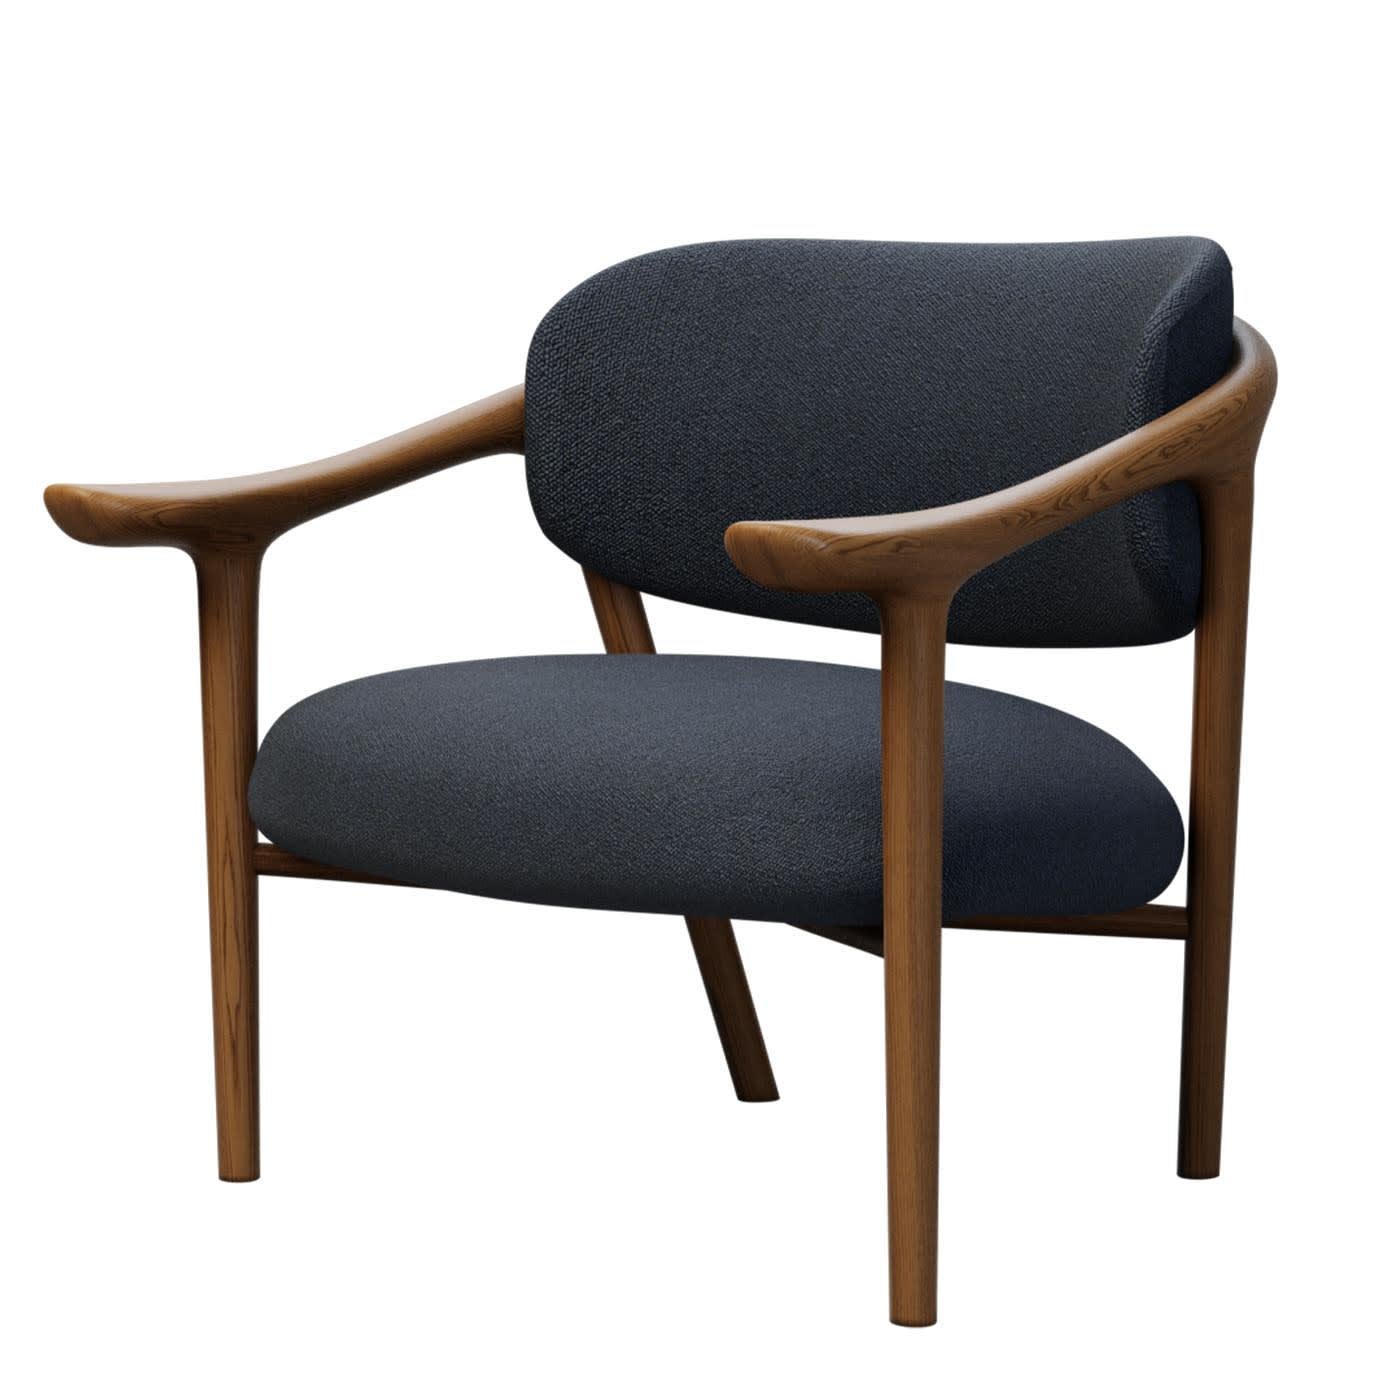 Dieser elegante und schlichte Sessel zeigt ein modernes Design von zeitlosem Wert. Er ist aus Eschenholz handgefertigt und verfügt über eine weich gepolsterte Sitzfläche und Rückenlehne, die beide mit Stoff bezogen sind. Das von Libero Rutilo für